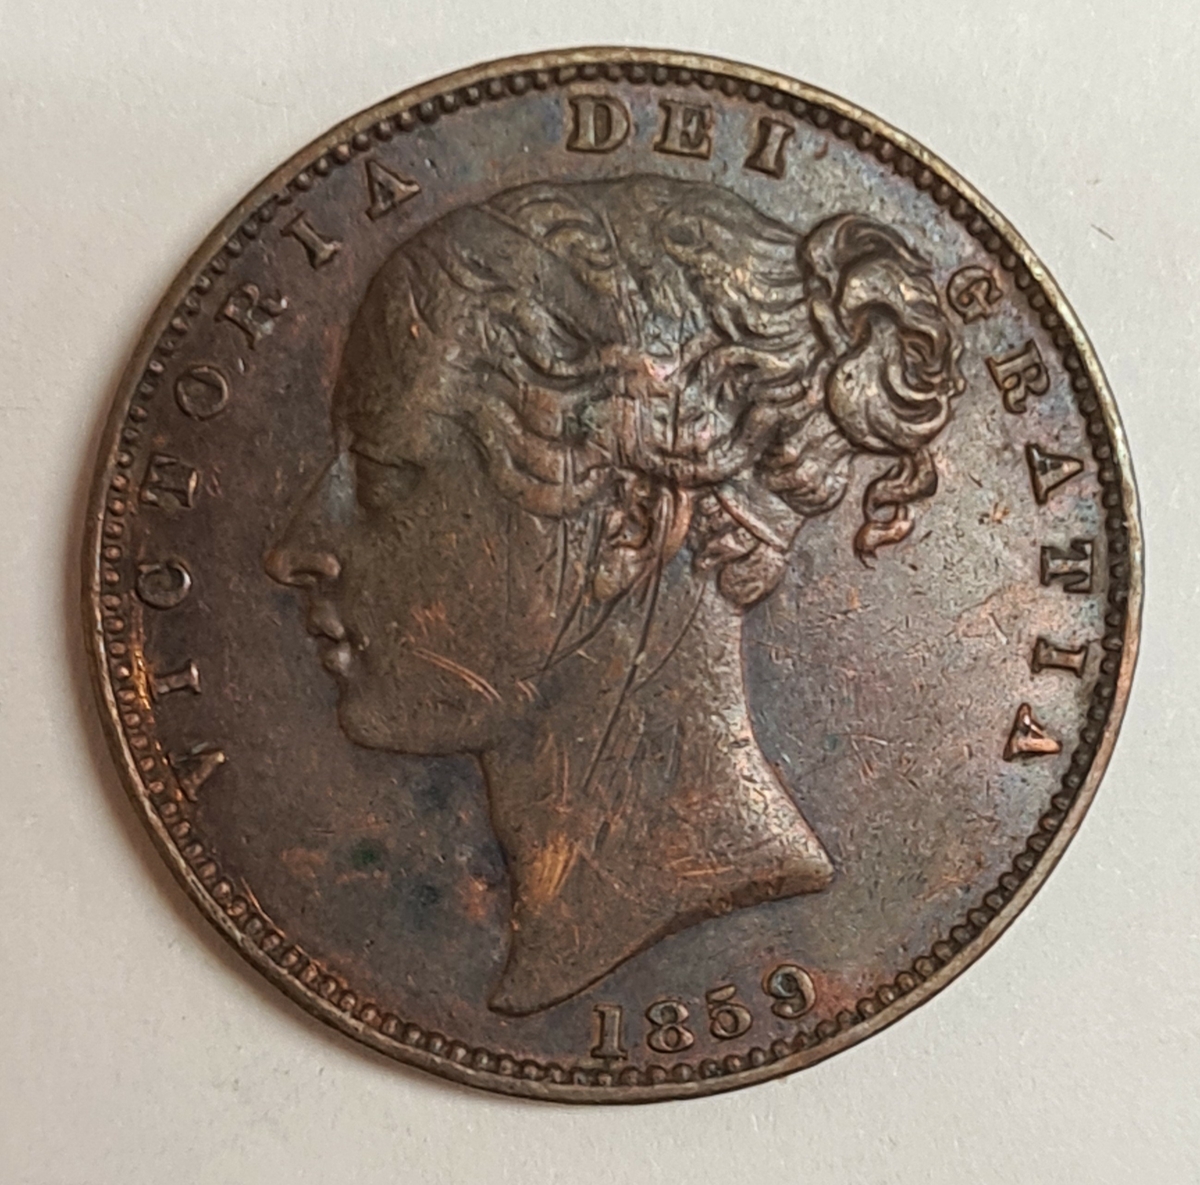 3 mynt från Storbritanien/England.
Farthing 1847
Farthing 1859
Farthing 1851